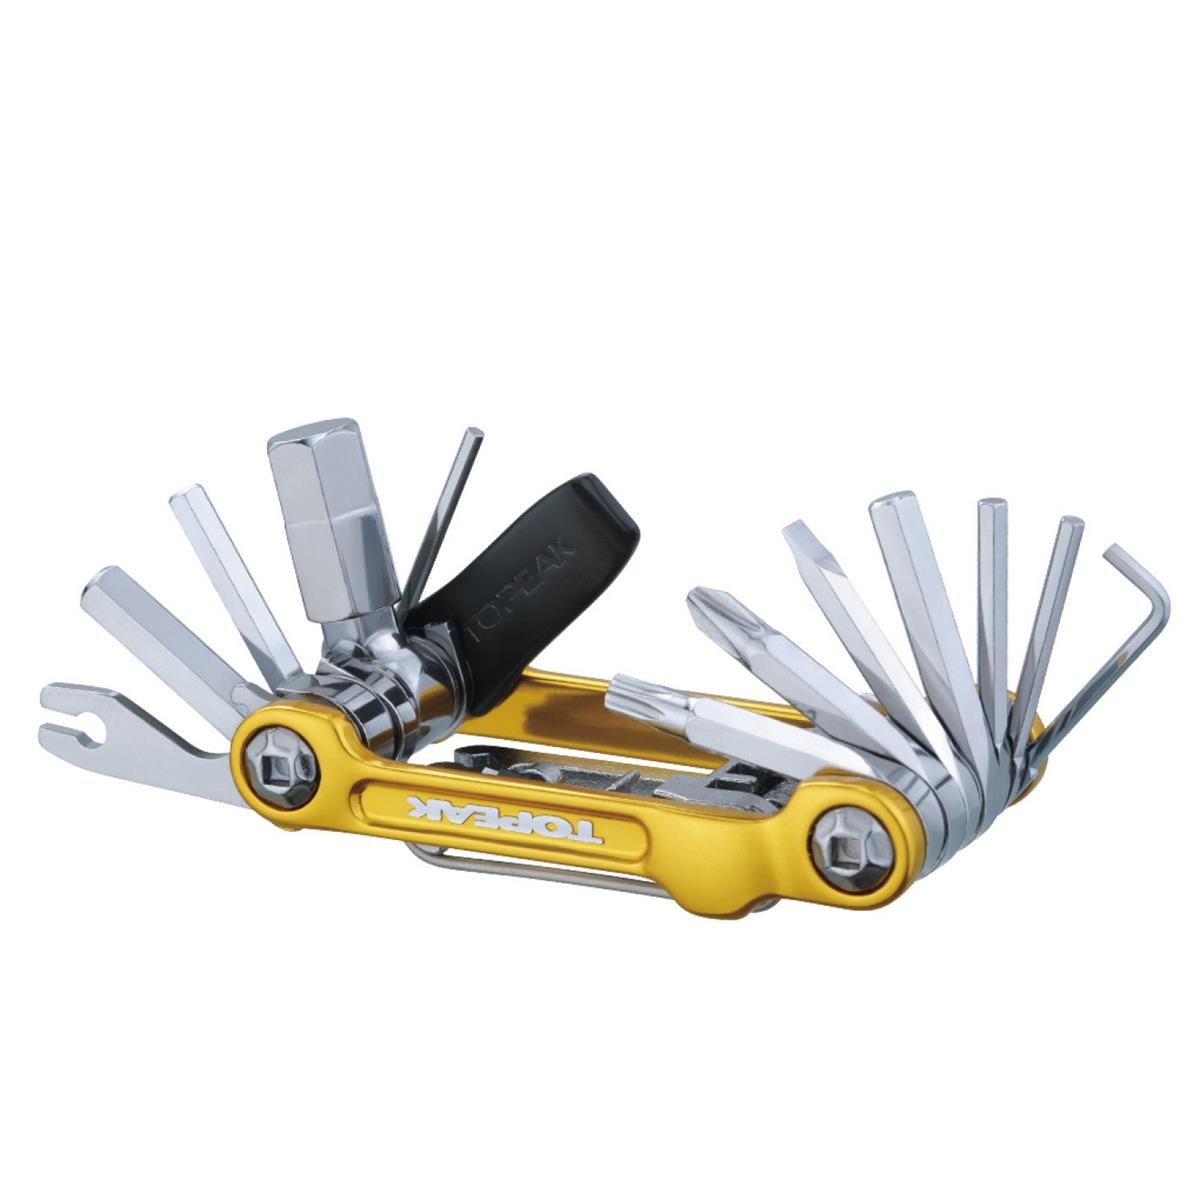 Topeak Multitool Mini 20 Pro 23 Tools, Gold